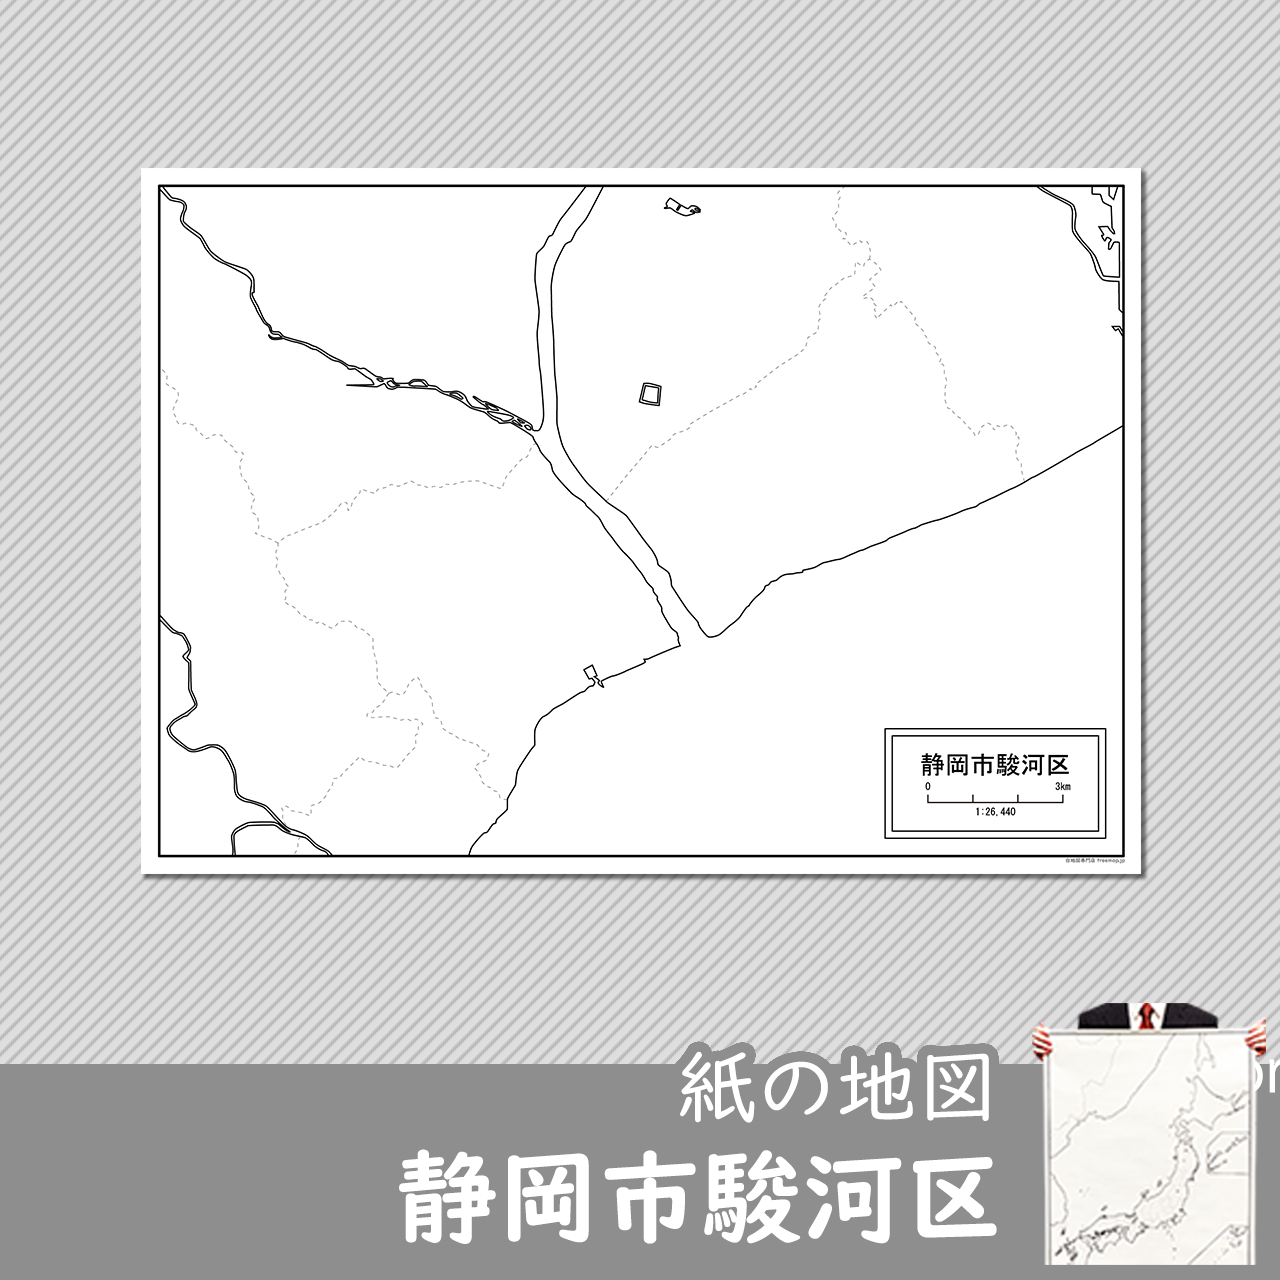 静岡市駿河区の紙の白地図のサムネイル